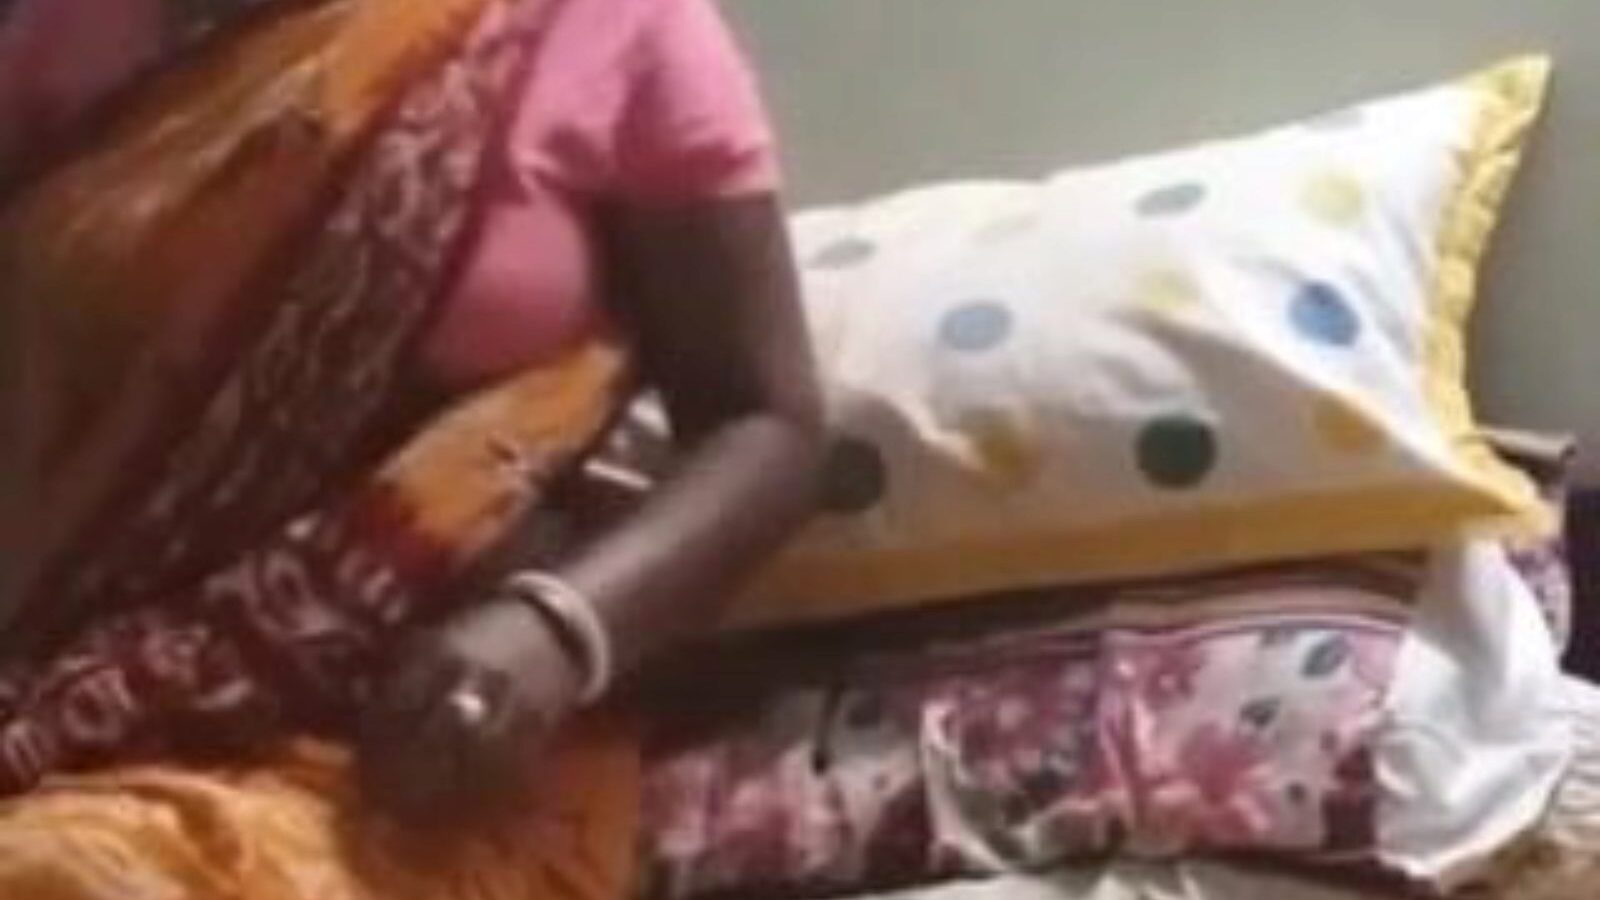 ιδιοκτήτης lick desi maid μουνί, δωρεάν ινδική πορνό 49: xhamster ρολόι ιδιοκτήτης lick desi maid μουνί βίντεο στο xhamster, ο πιο πατημένος σεξουαλικός πόρος ιστού με τόνους δωρεάν ινδική δωρεάν xxx μουνί και χίντι πορνό βίντεο